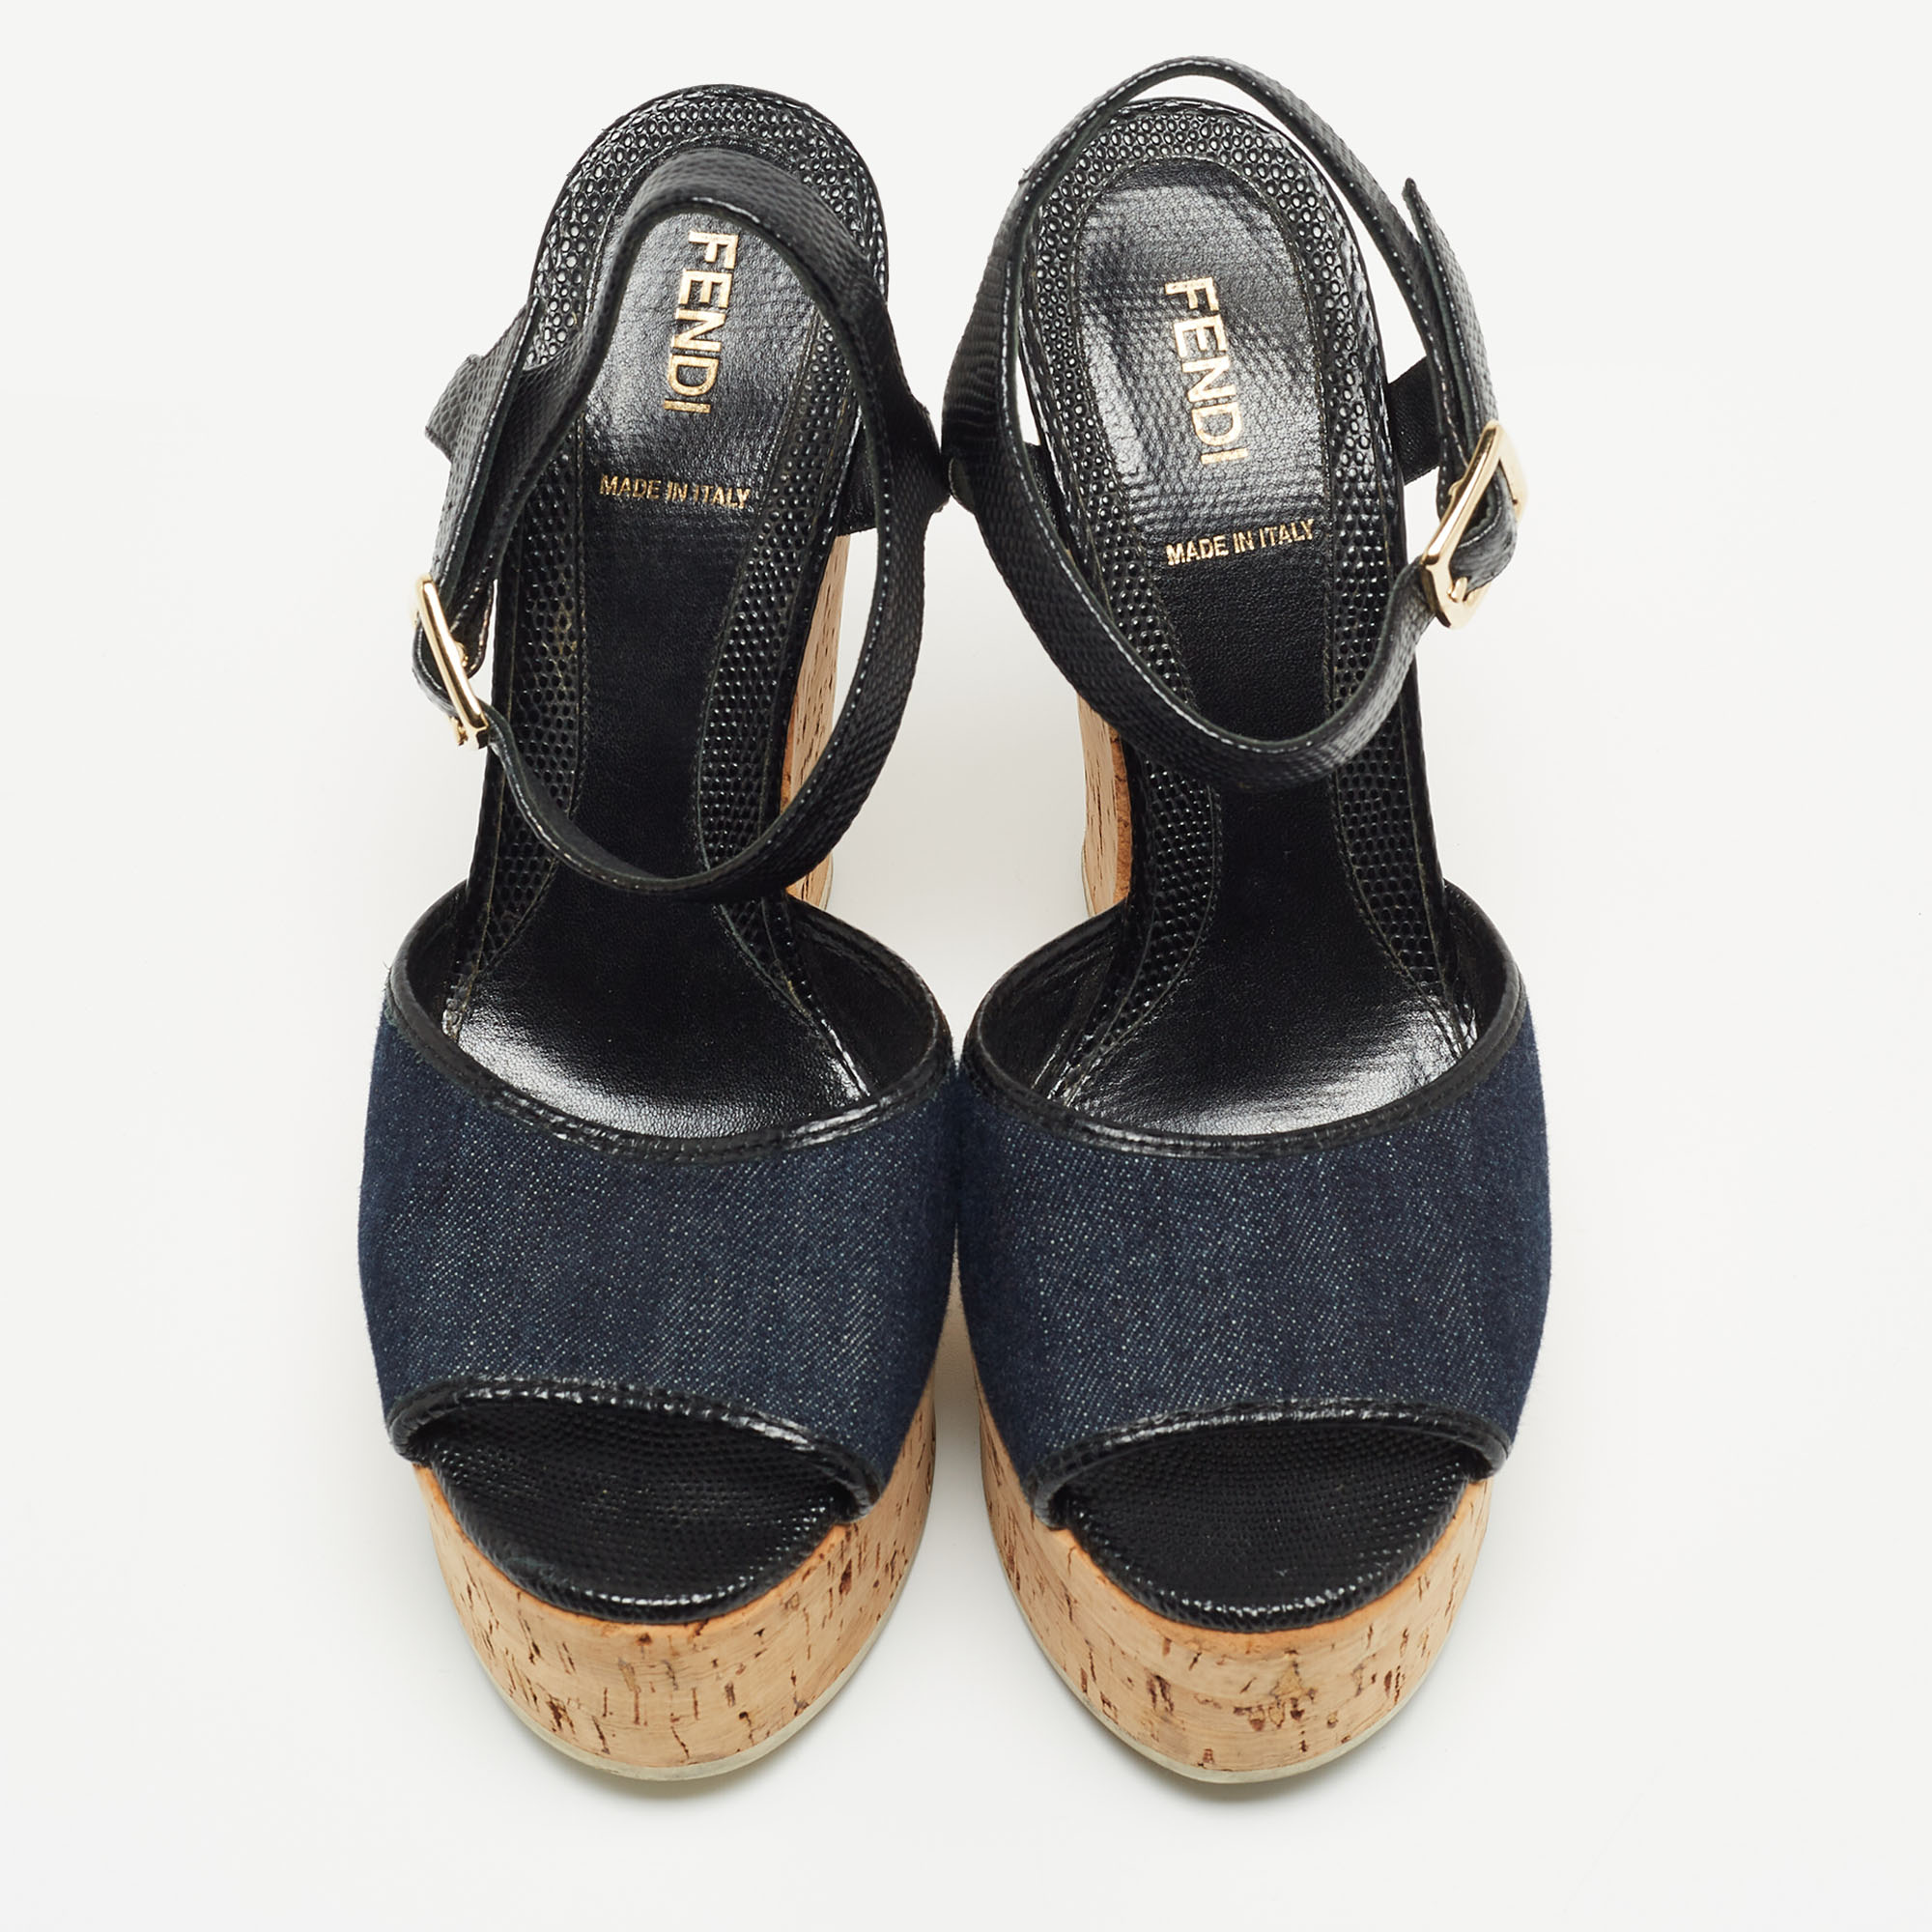 Fendi Navy Blue/Black Denim And Lizard Embossed Leather Cork Wedge Platform Ankle Strap Sandals Size 38